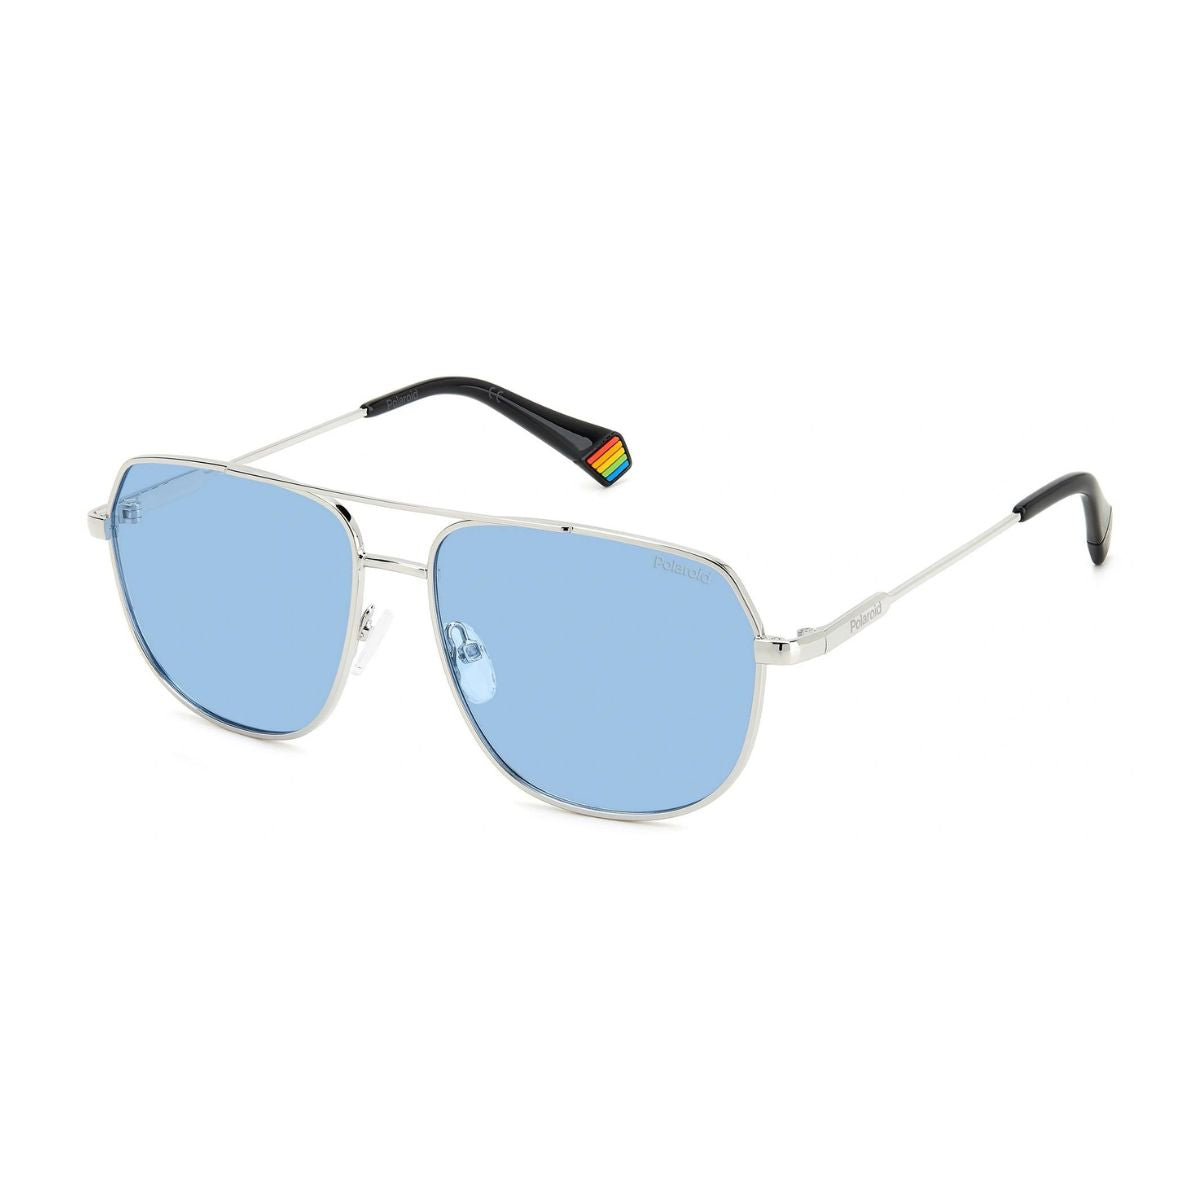 "Polariod 6195S 010 C3 Polarized Sunglasses For Men And Women At Optorium"